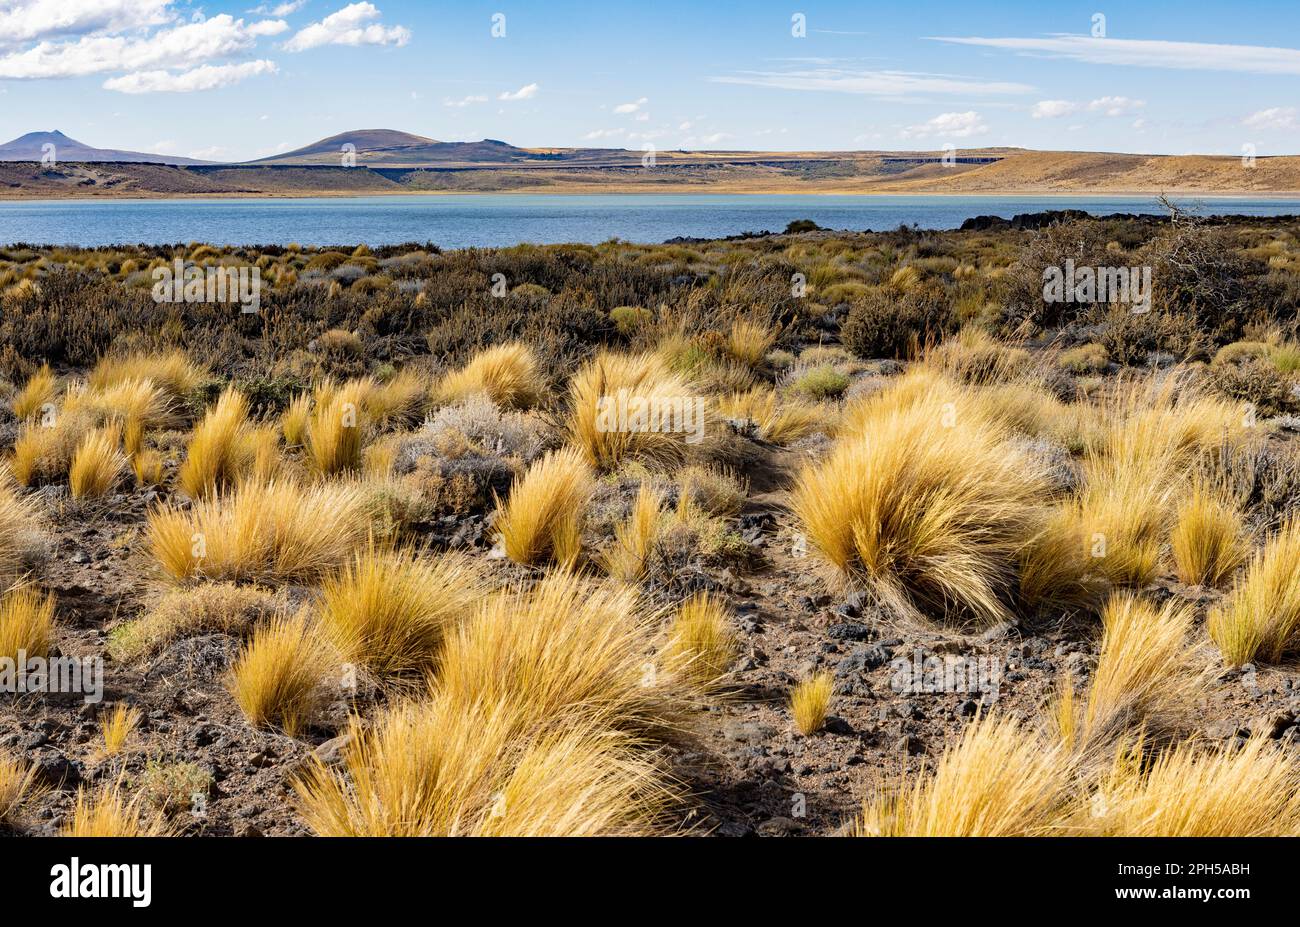 Parc national Laguna Blanca à Neuquén, Argentine - Voyager en Amérique du Sud Banque D'Images